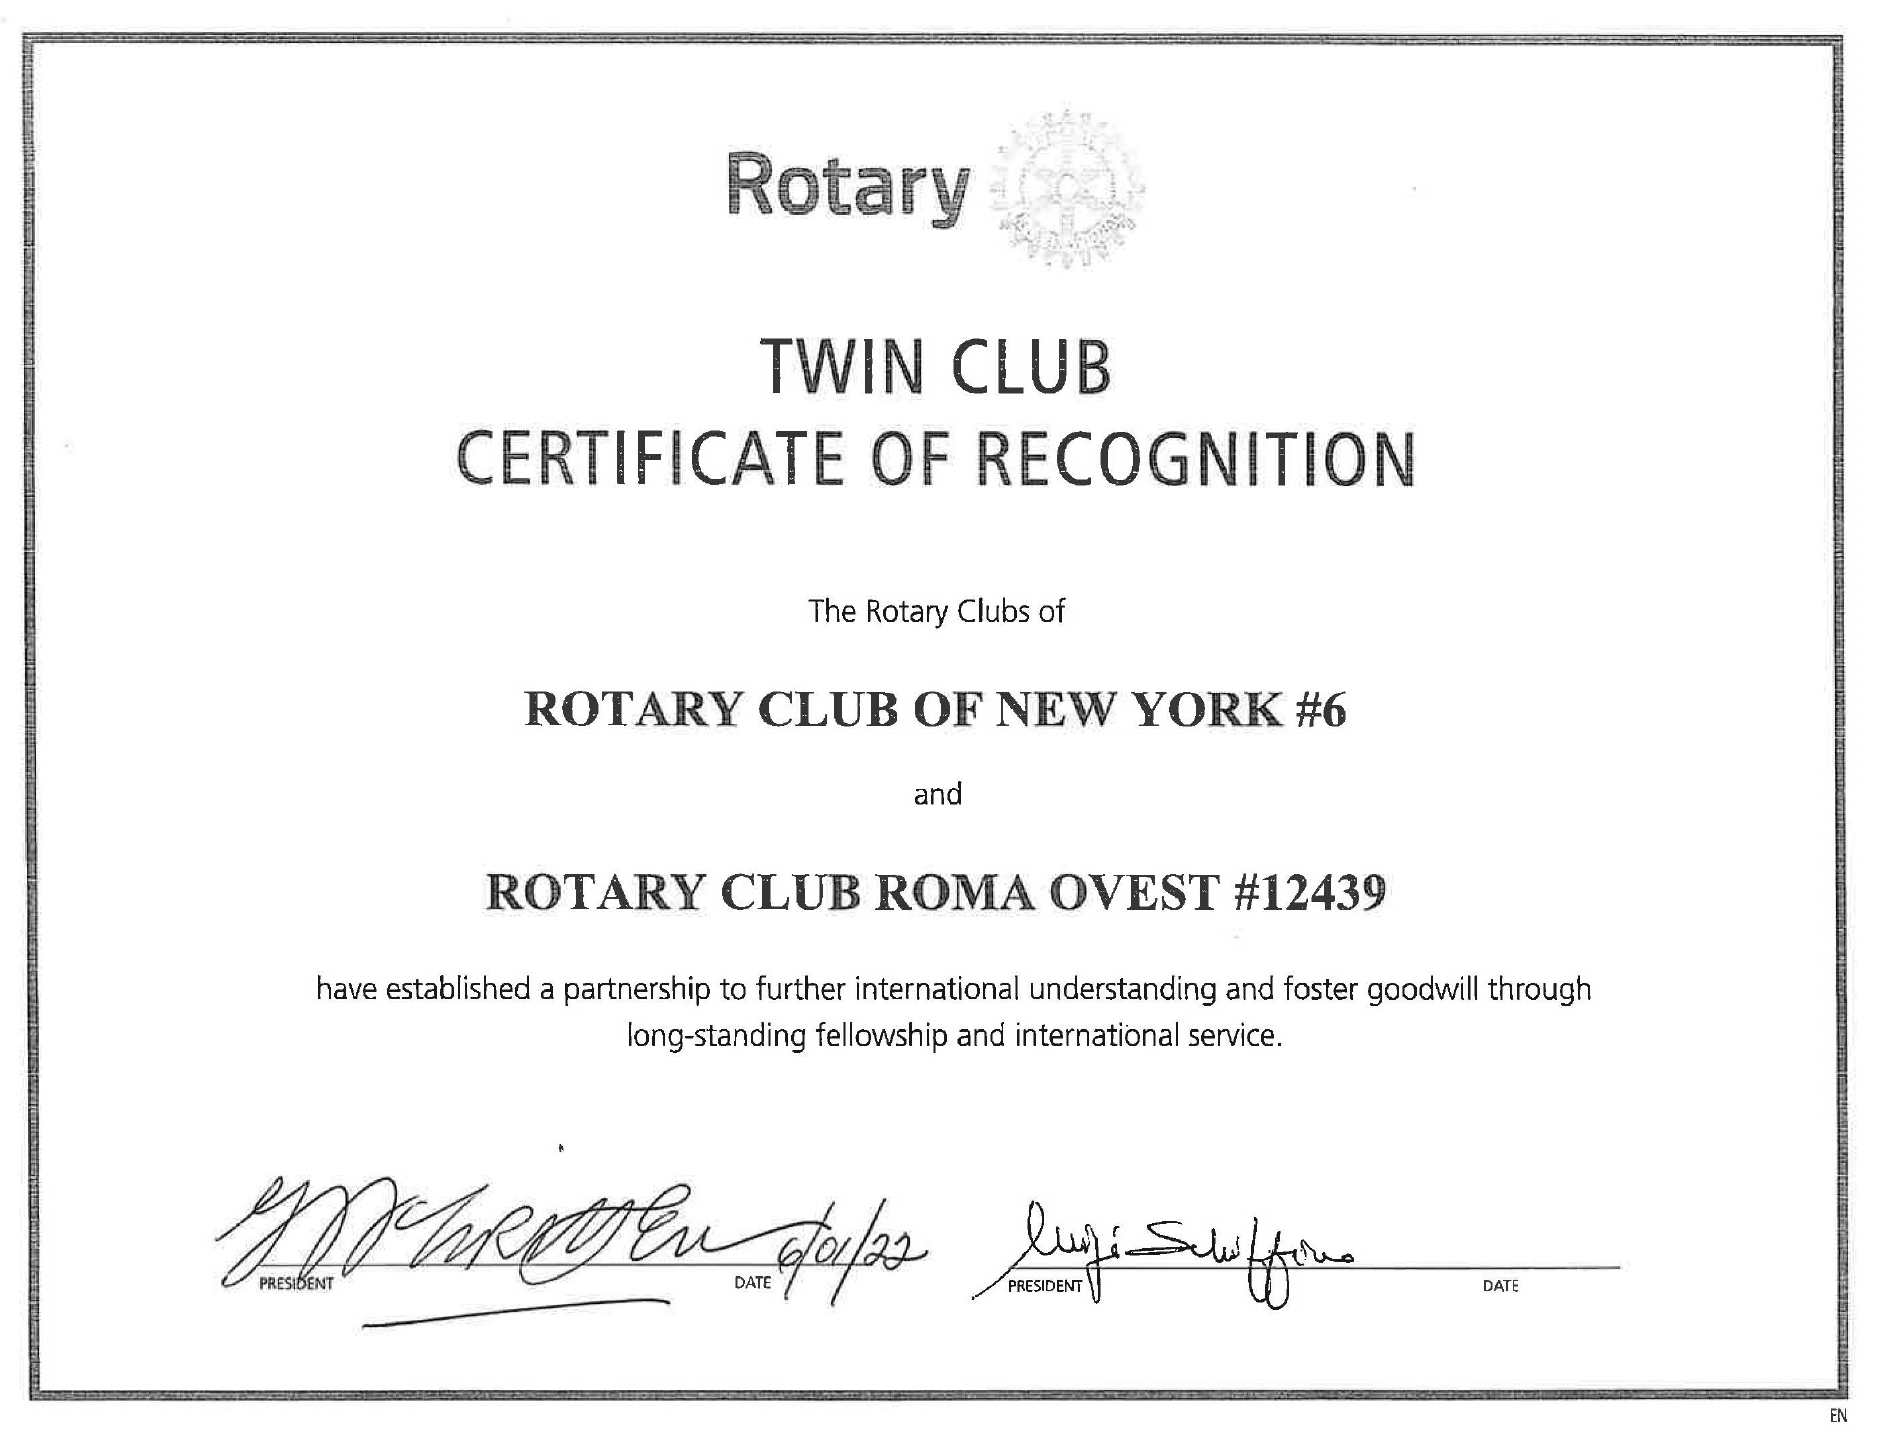 Gemellaggio Rotary Club NY #6